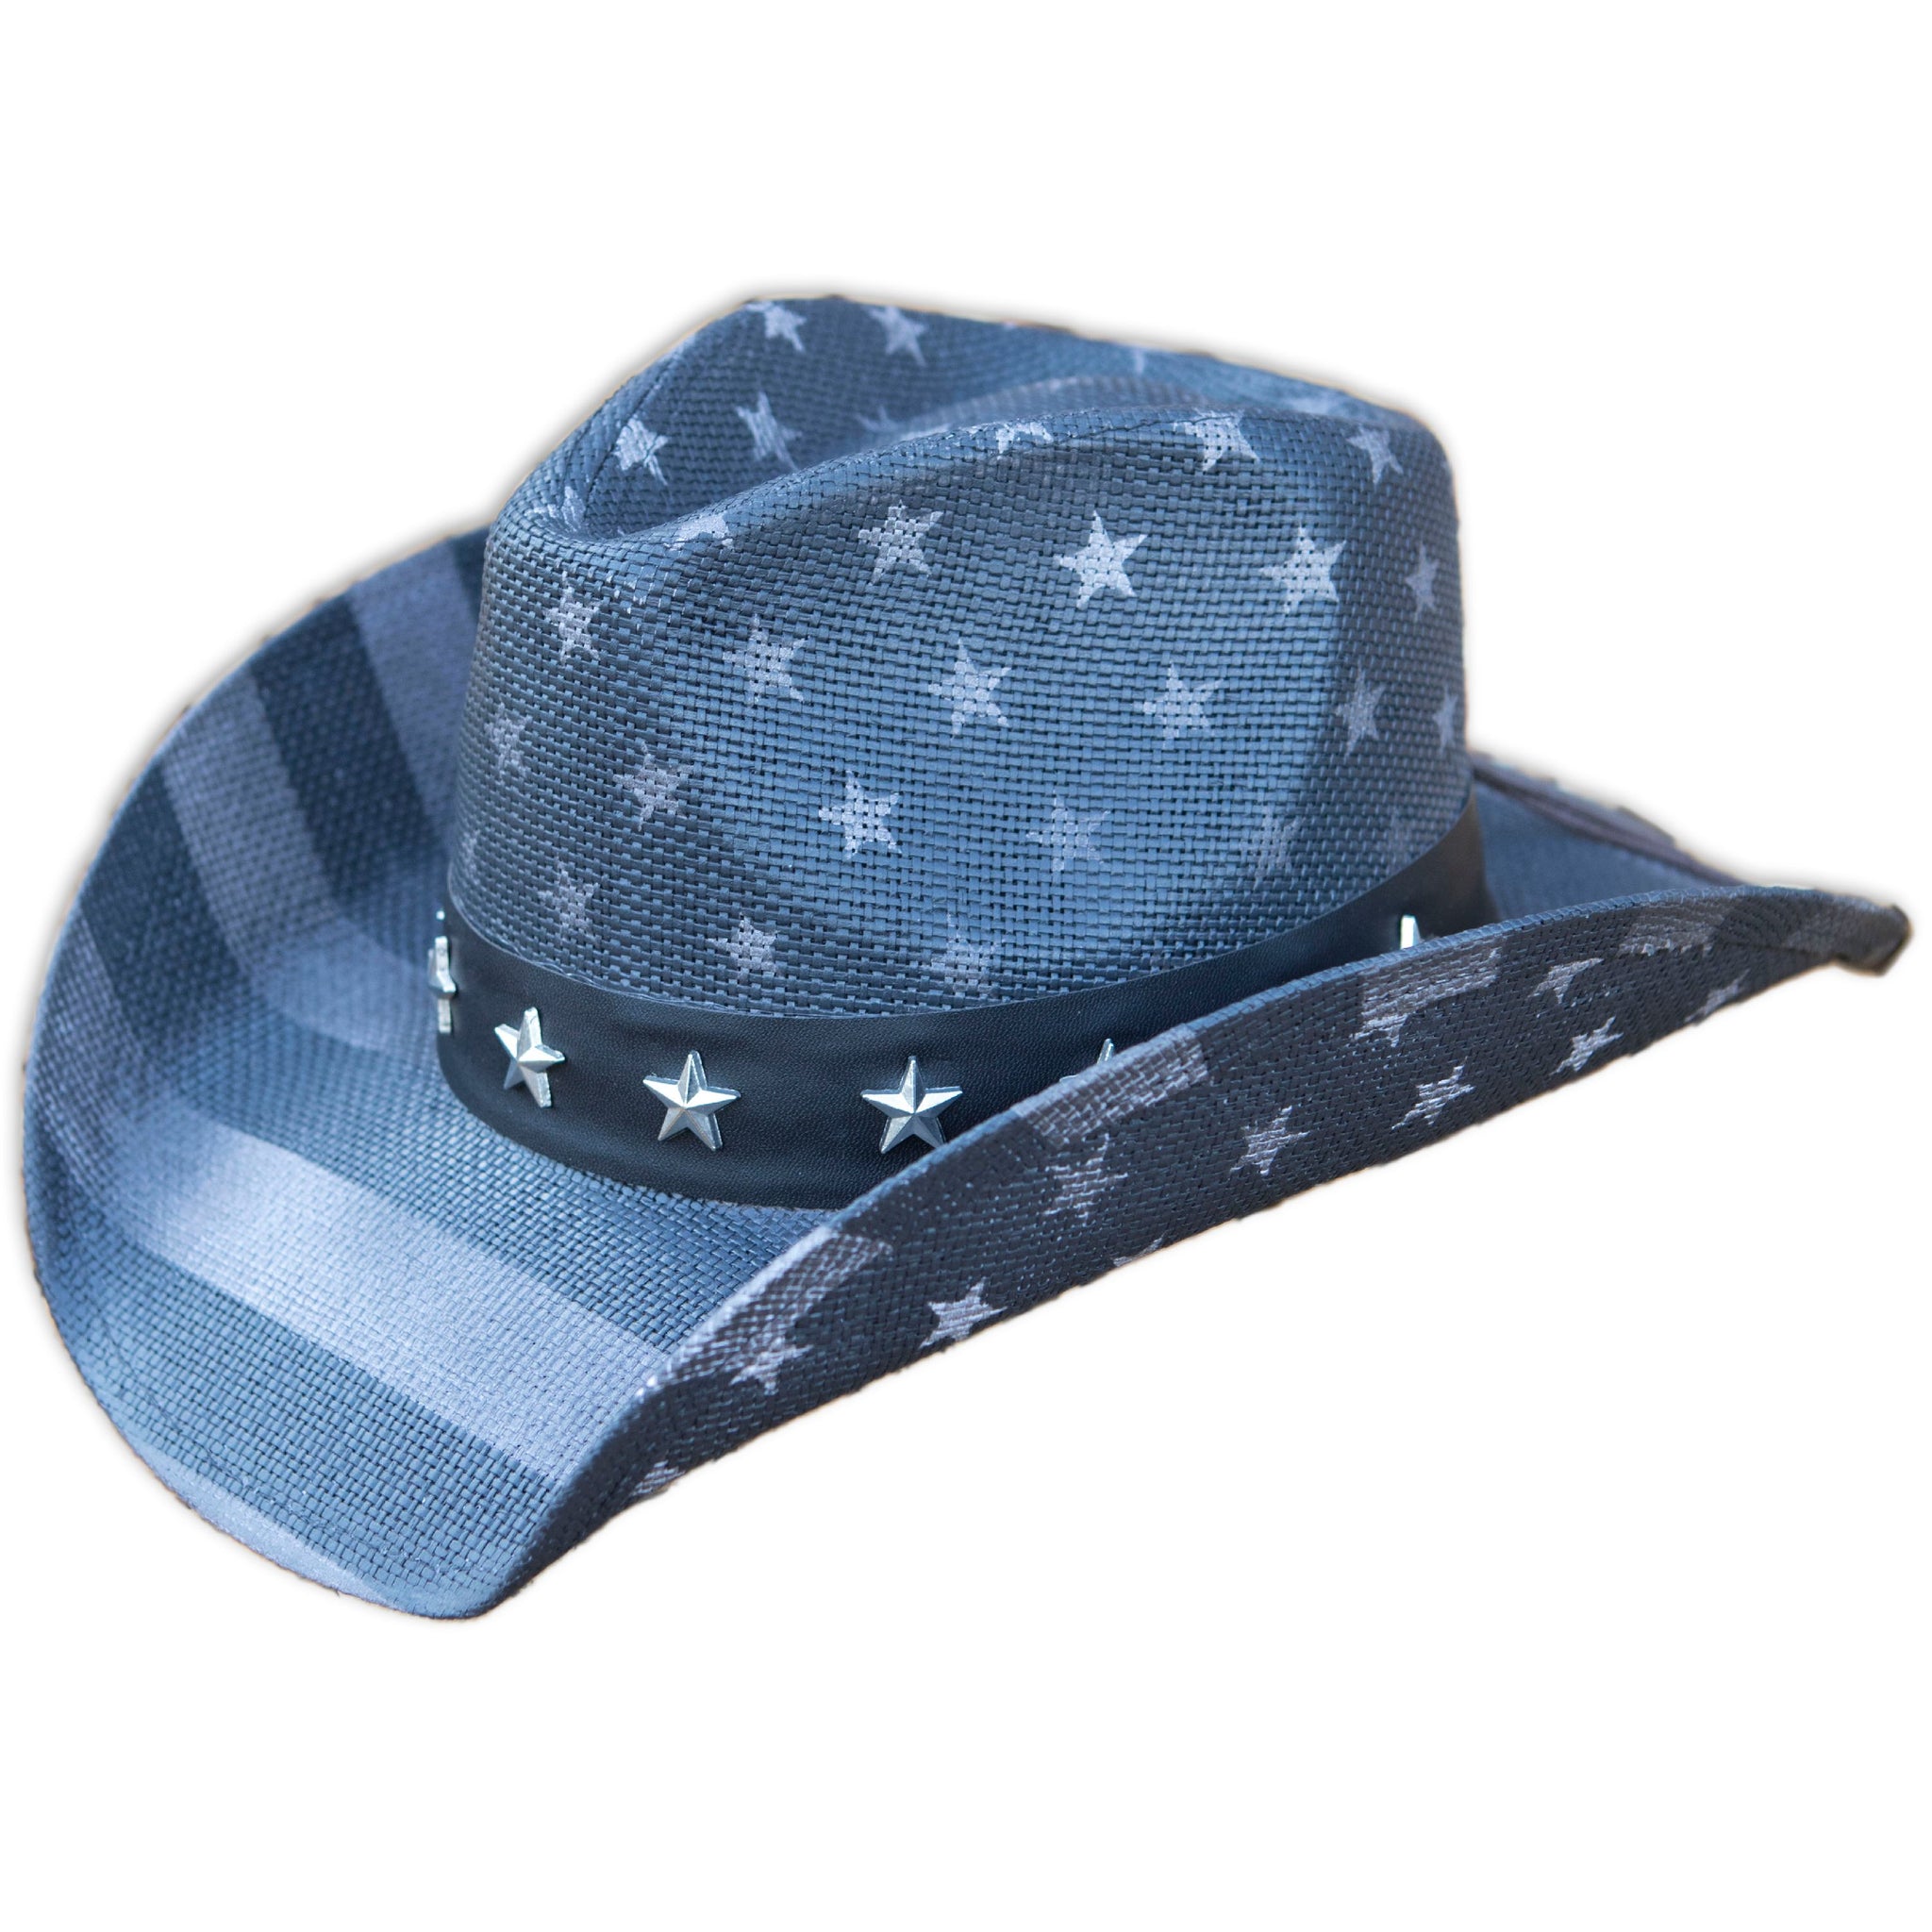 Toyo American Flag Star Studded Straw USA Cowboy Hat Blue.